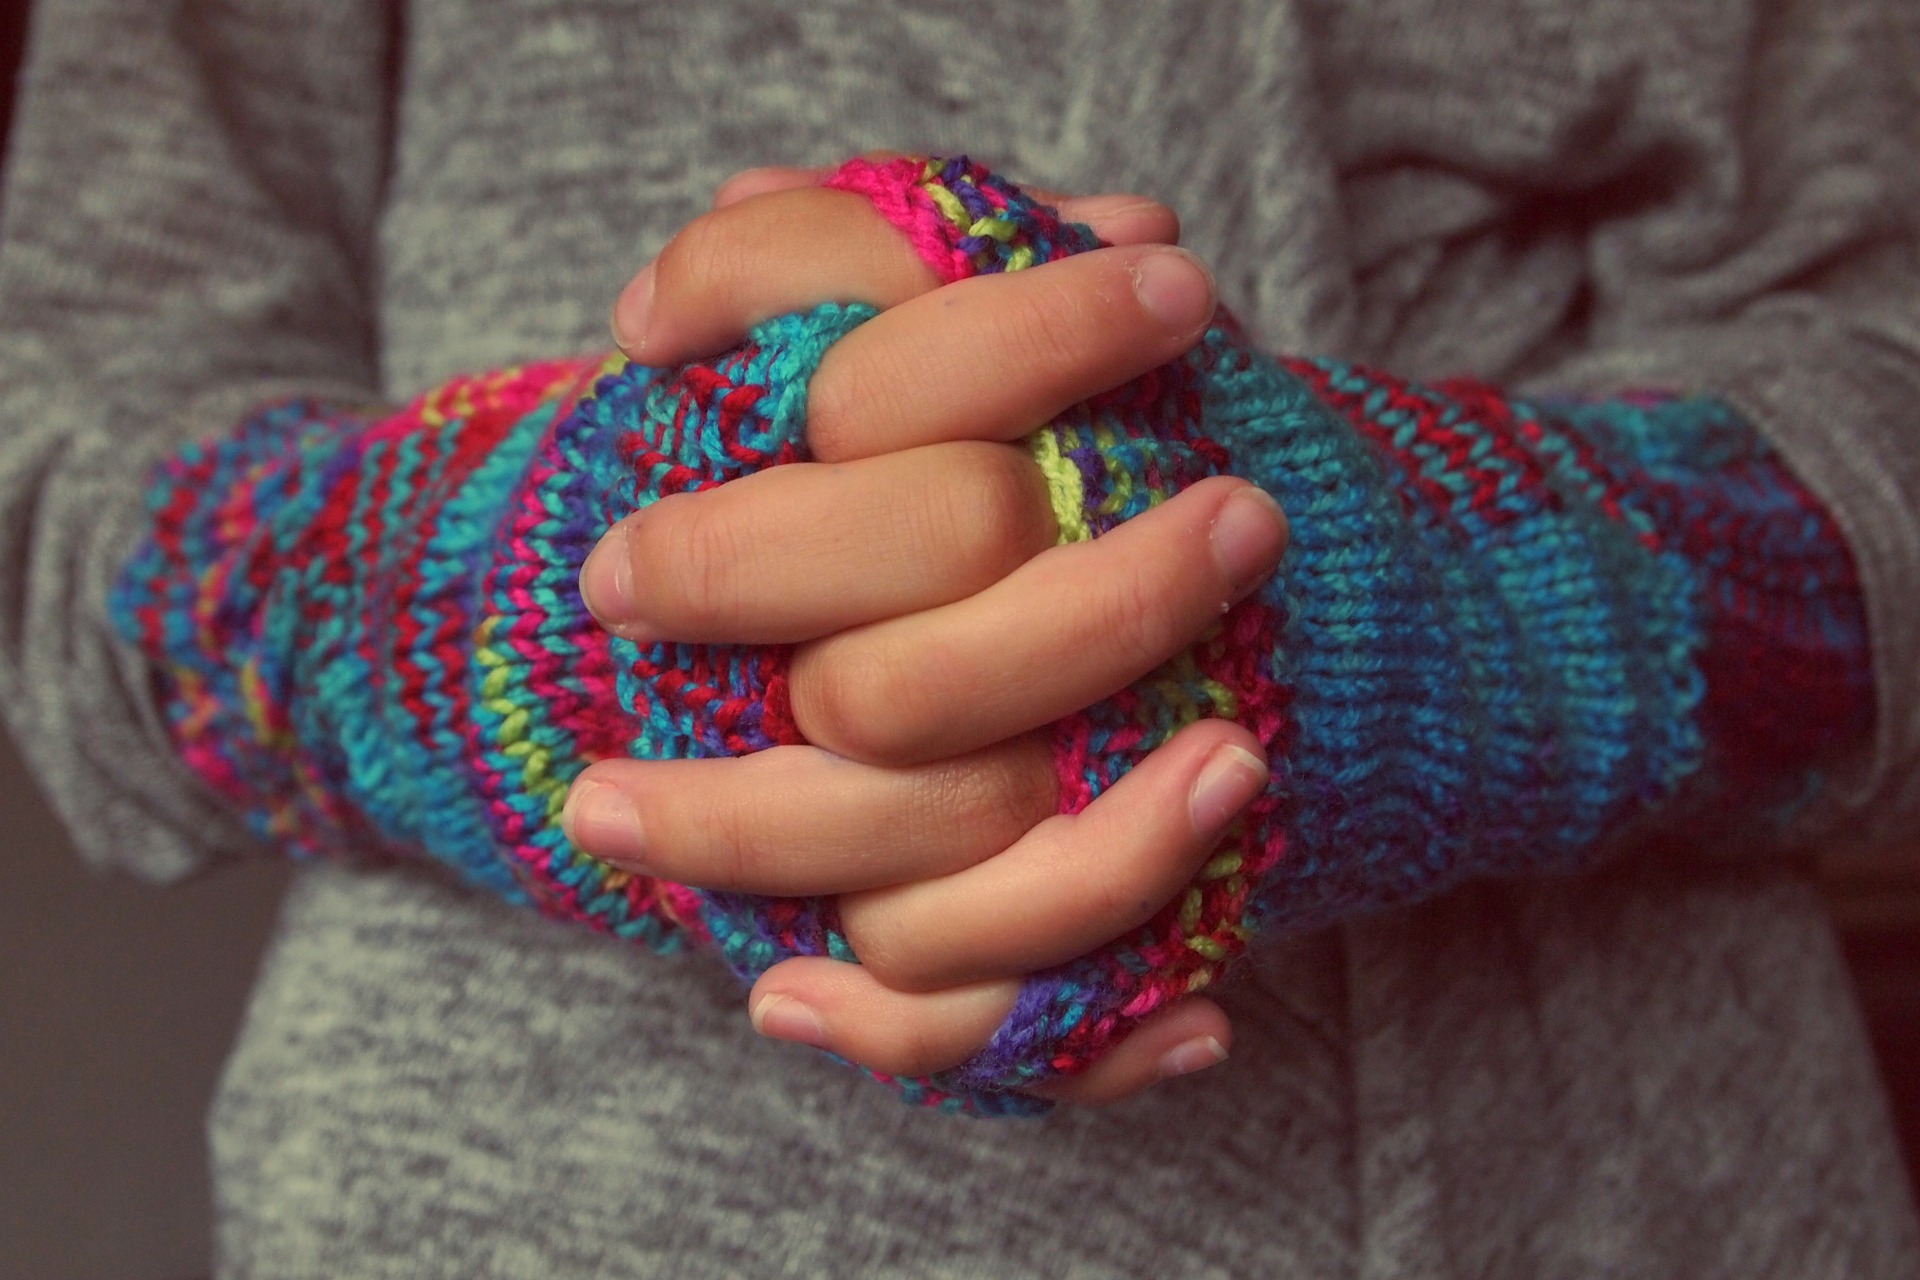 Kuvassa kädet ristissä, käsissä värikkäät käsineet